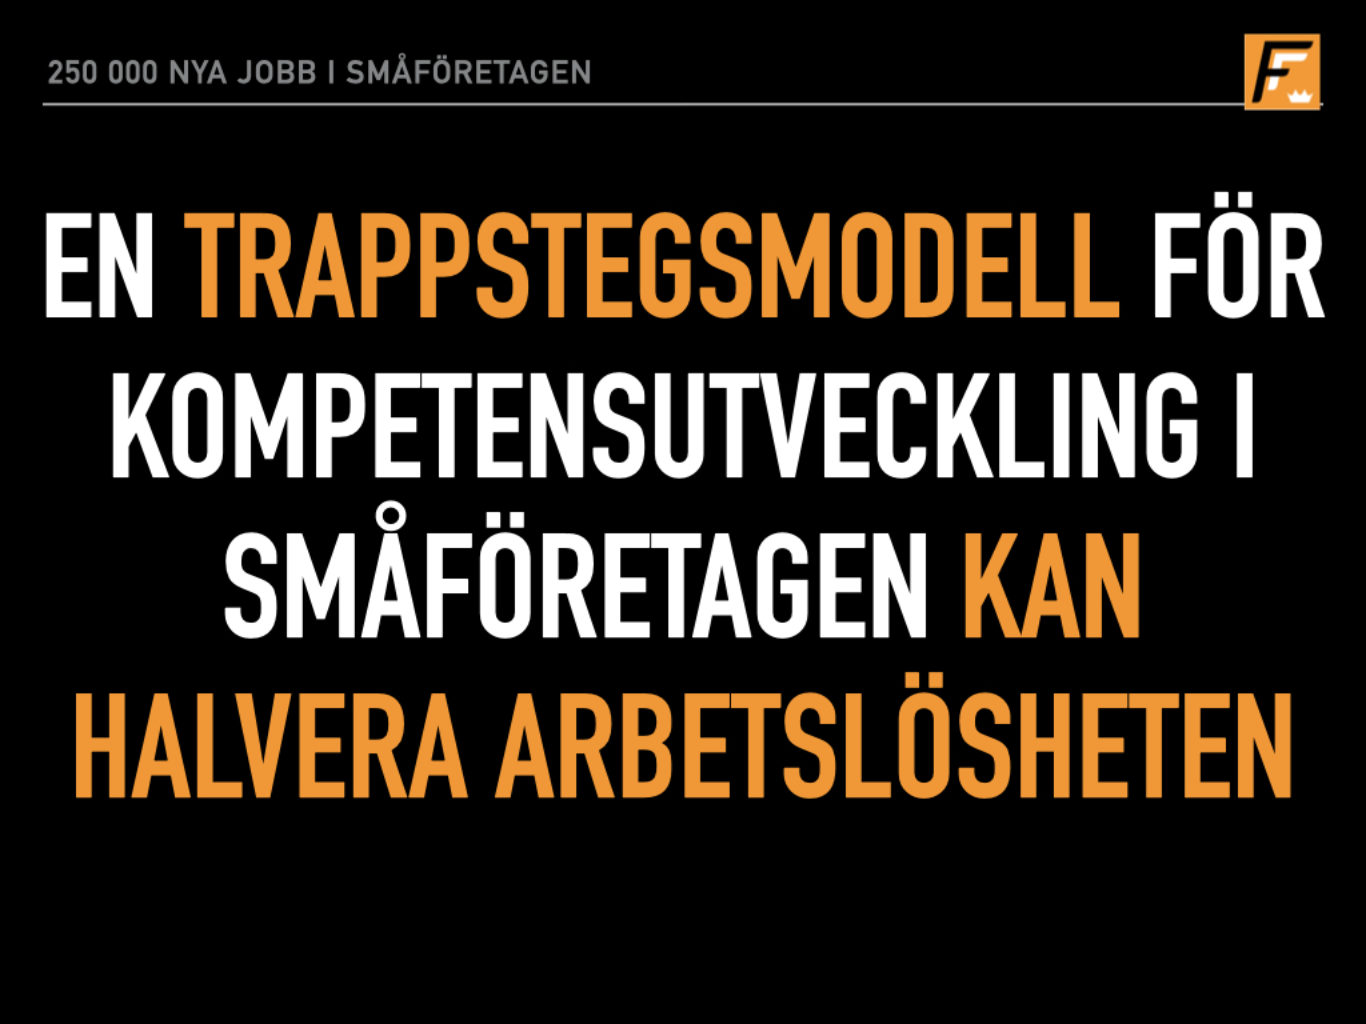 Almedalenbilder Företagarförbundet Almedalen 1 halvera arbetslöshet.005